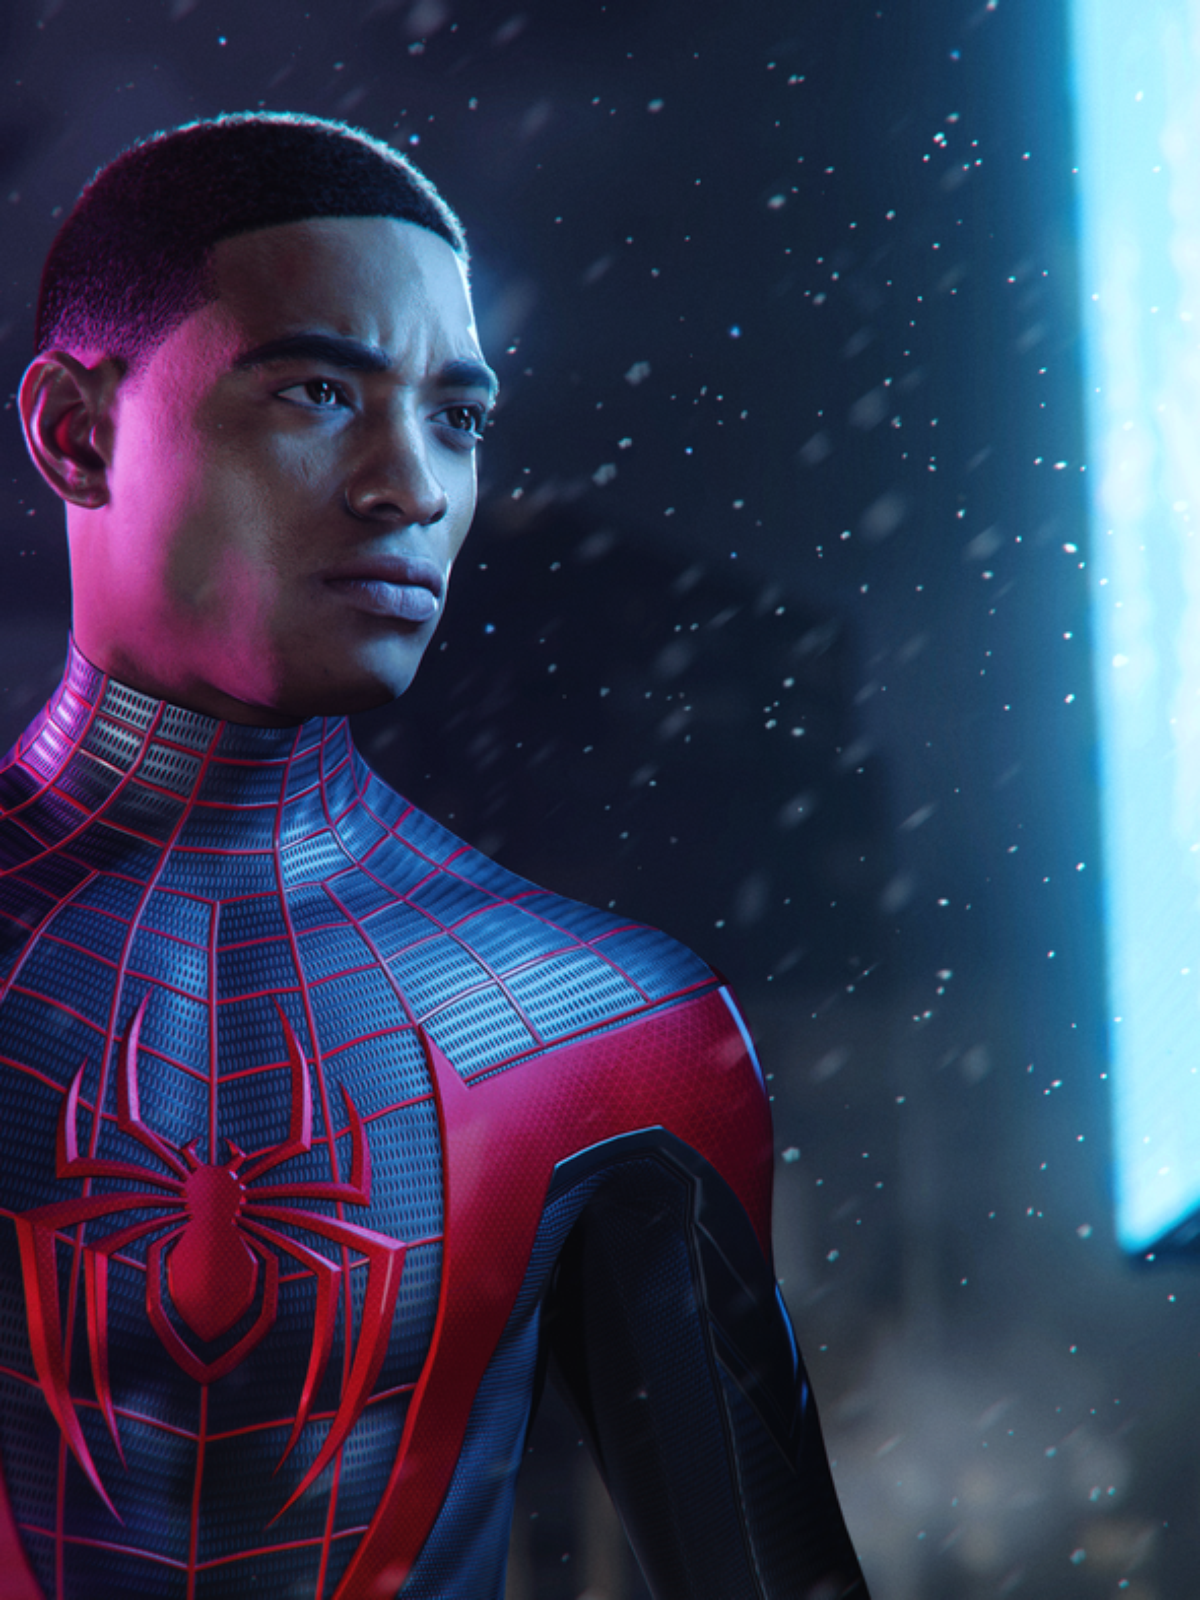 Spider-Man: Miles Morales já está disponível para PC; veja o trailer de  lançamento